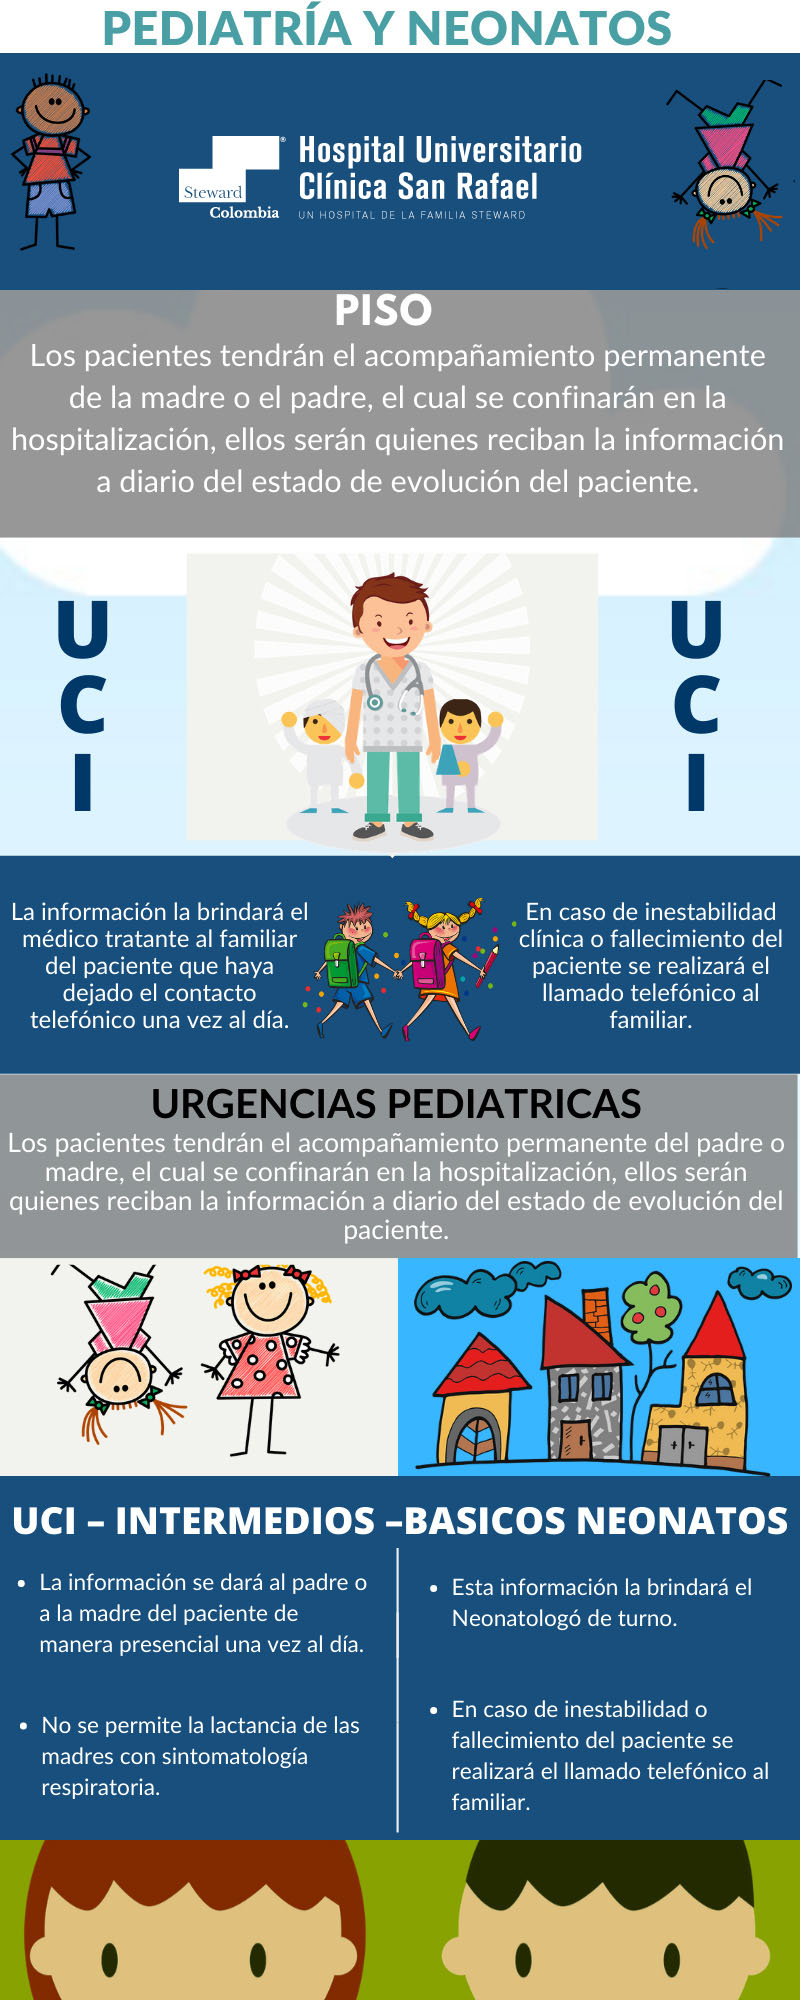 Pediatría